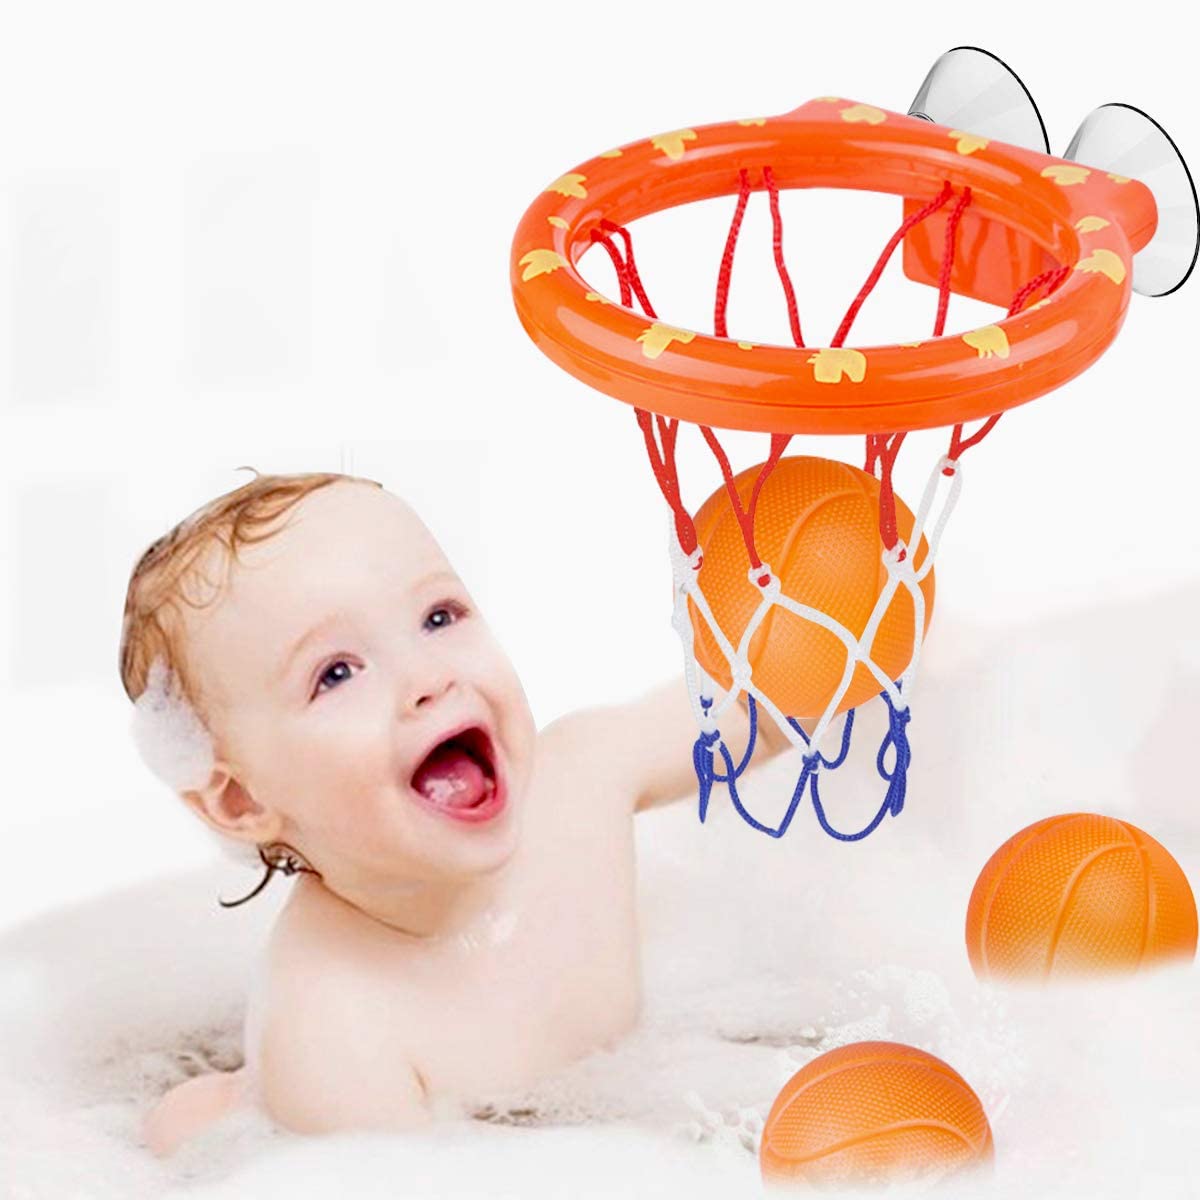 Kleinkind Badespielzeug Kinder Basketballkorb Badewanne Wasser Spielset Bab Z1S5 